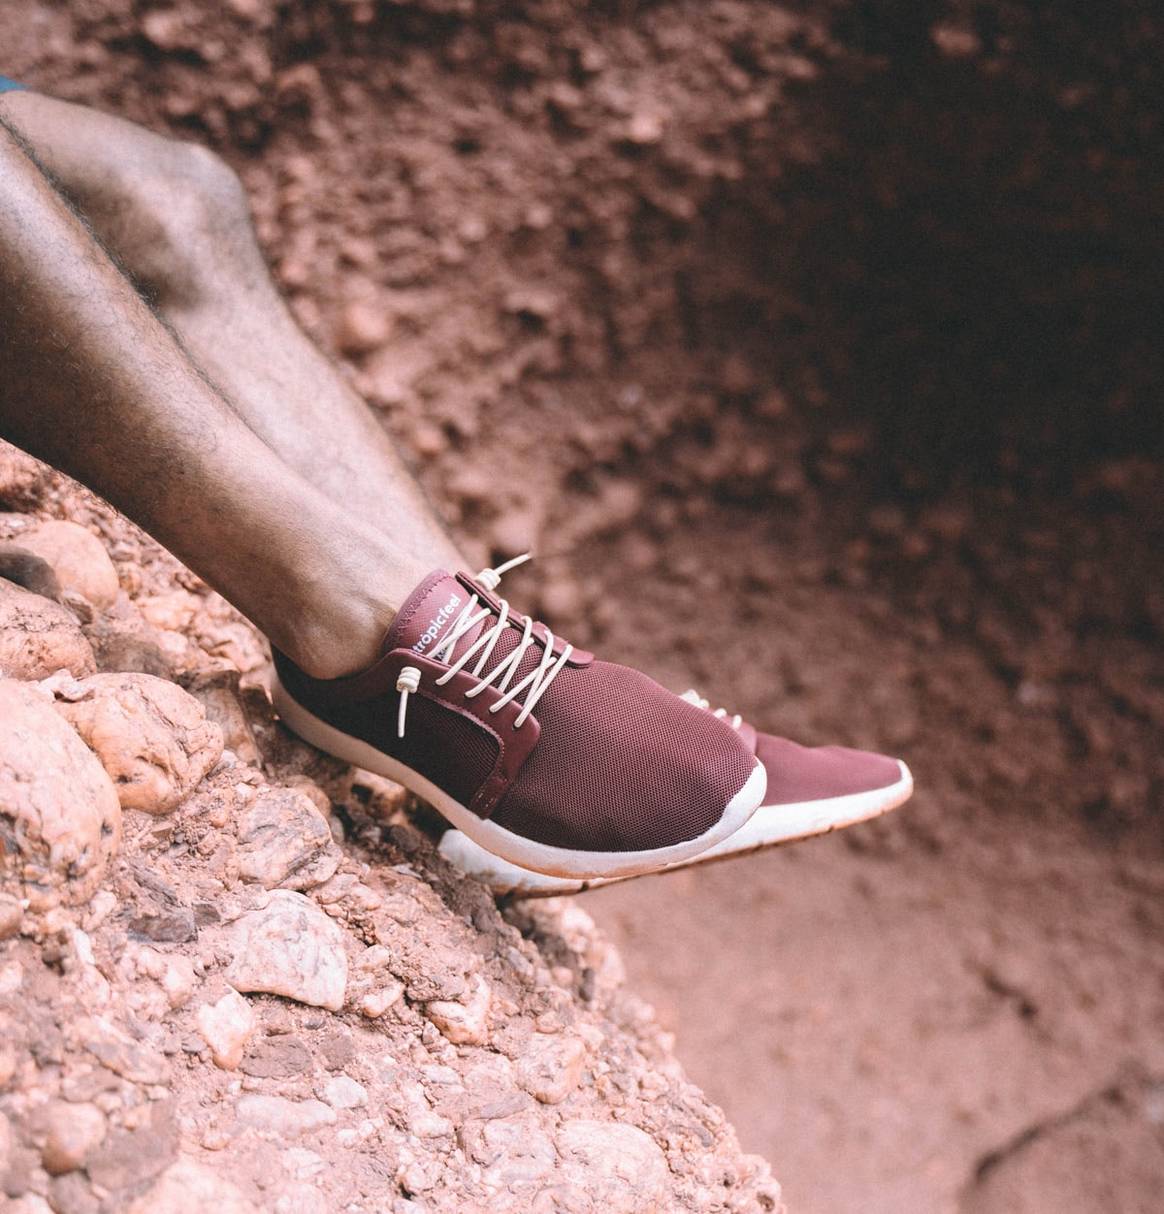 Crowdfunding: Der Macher des erfolgreichsten Crowdfunding-Schuhs verrät wie's geht